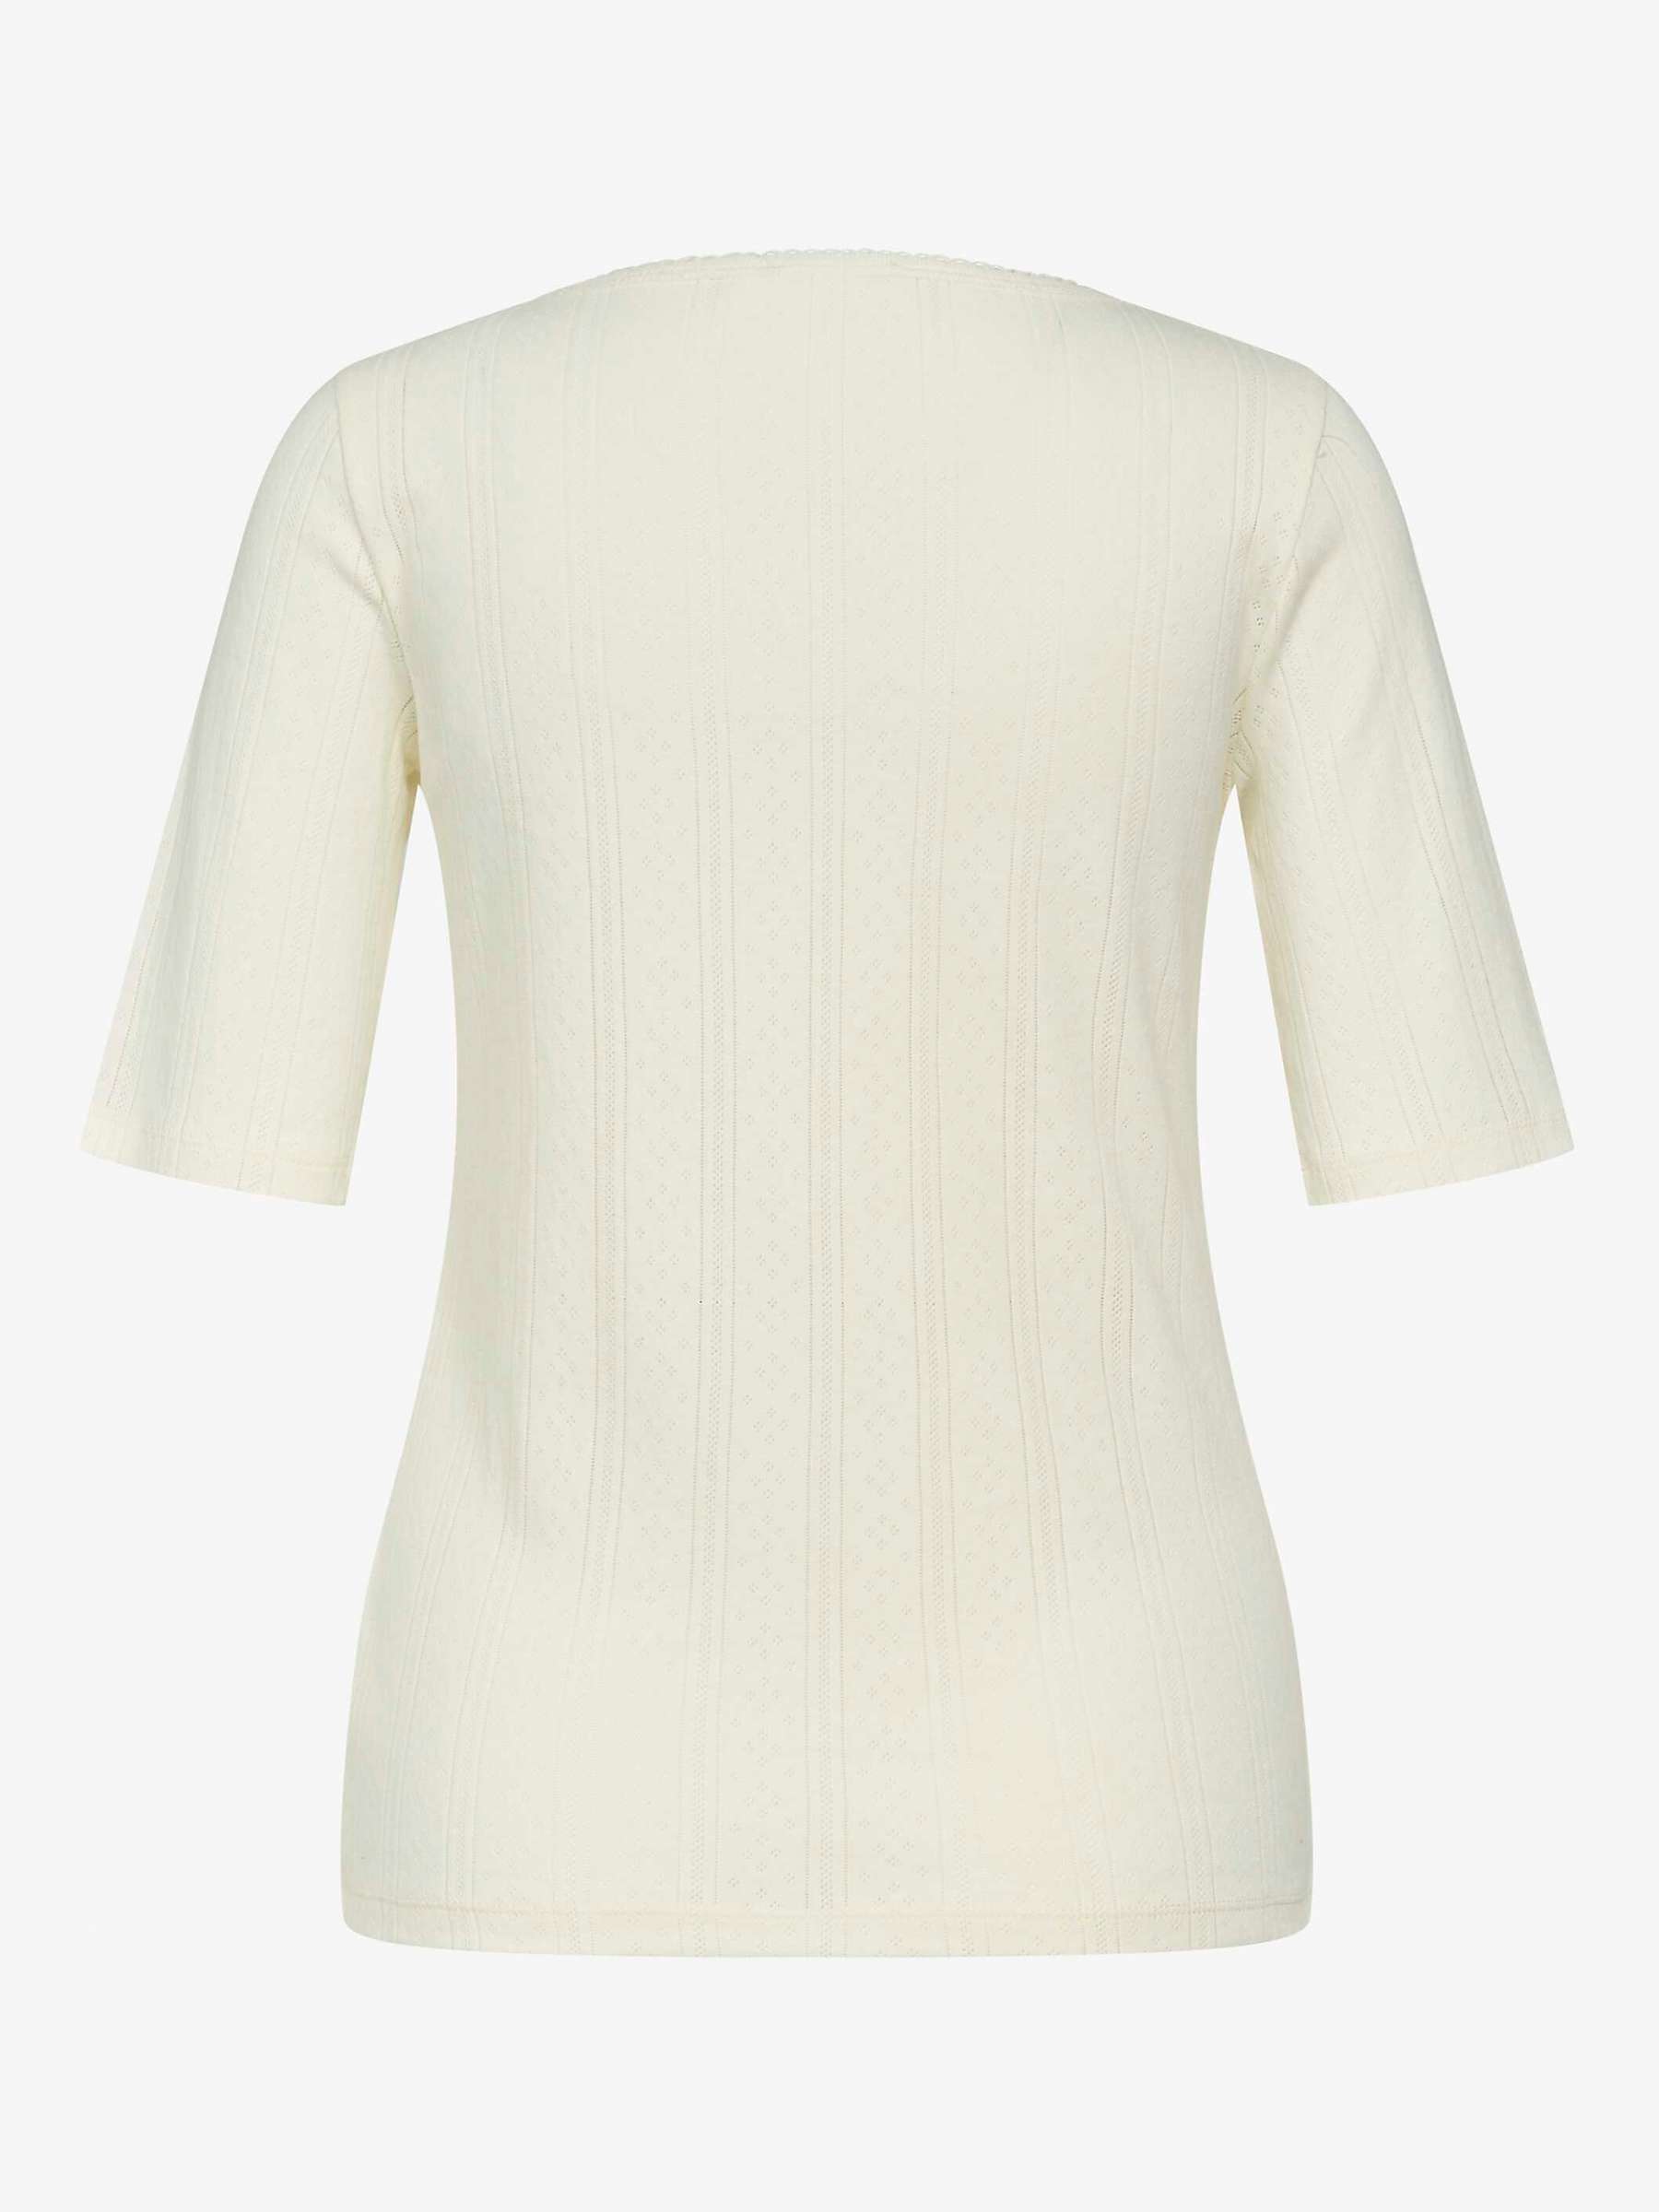 Noa Noa Mindy Pointelle Organic Cotton Elbow Sleeve T-Shirt, White at ...